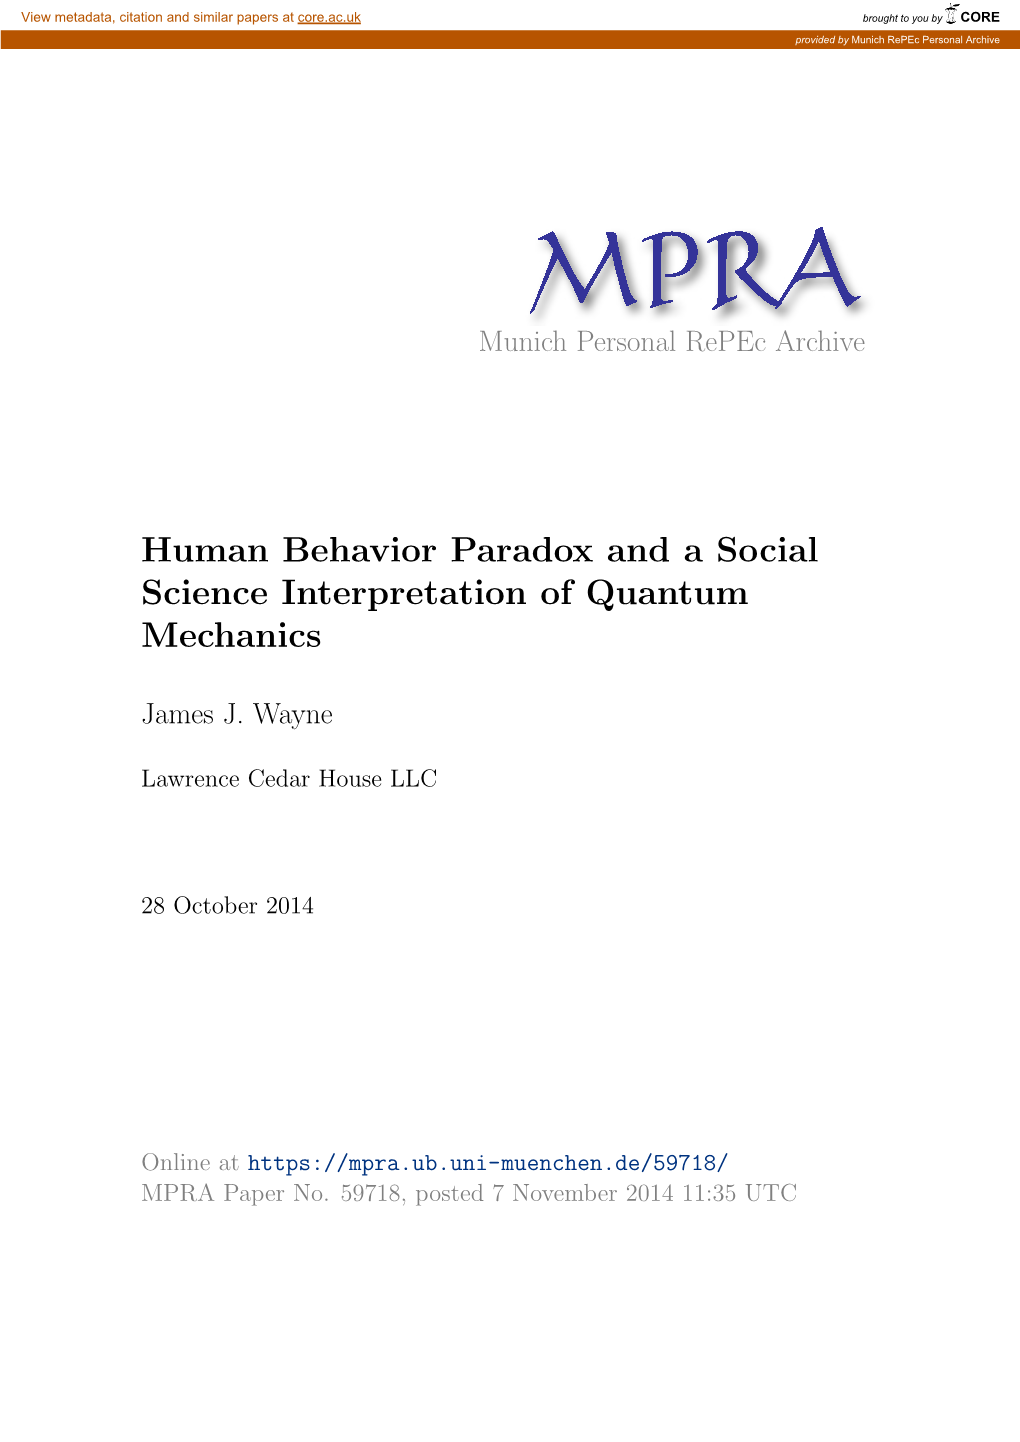 Human Behavior Paradox and a Social Science Interpretation of Quantum Mechanics